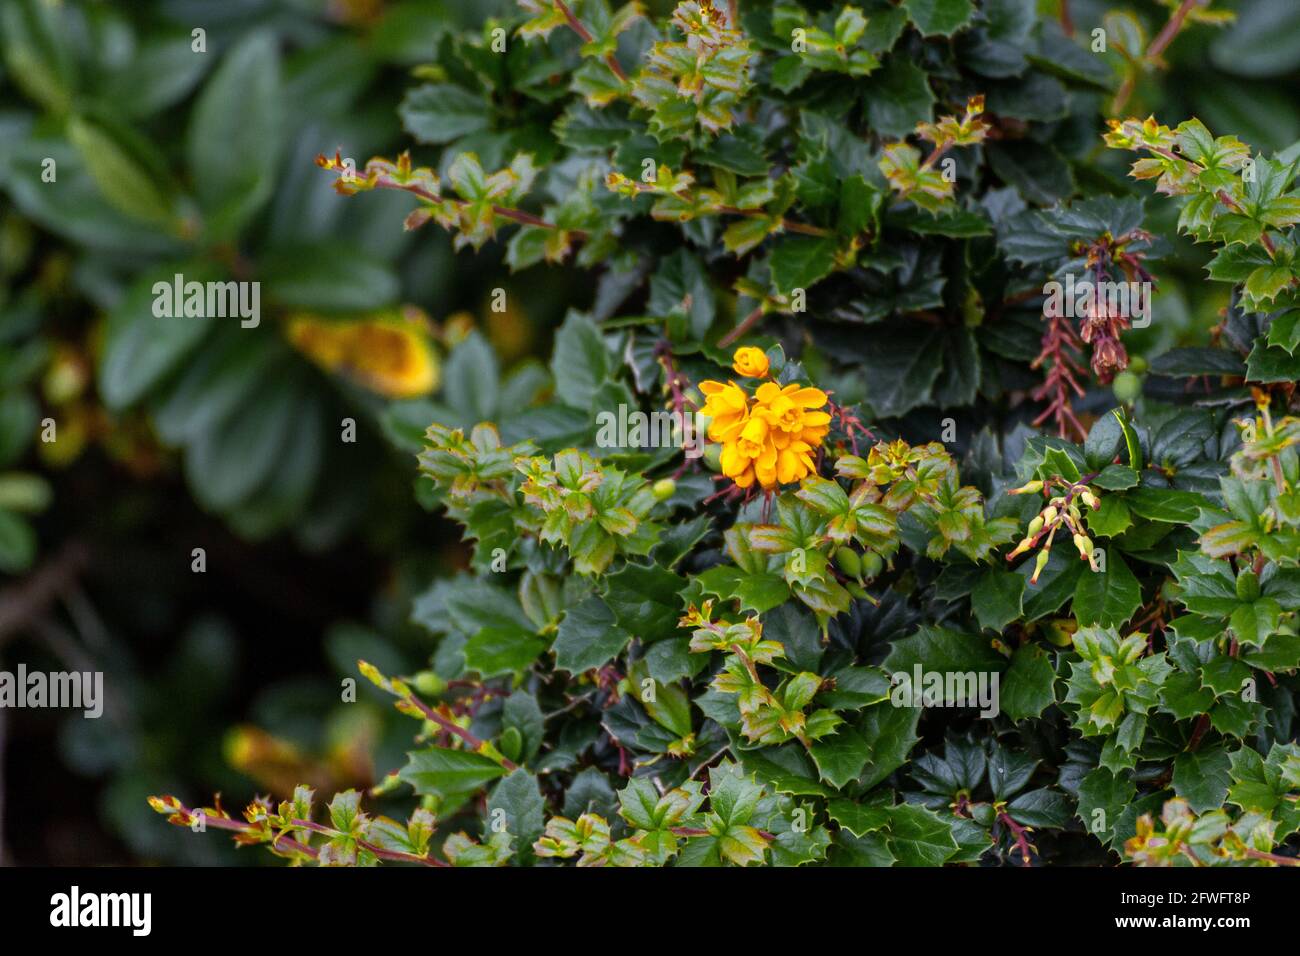 Primer plano de un grupo de pequeñas flores amarillas en un arbusto espinoso y verde Foto de stock